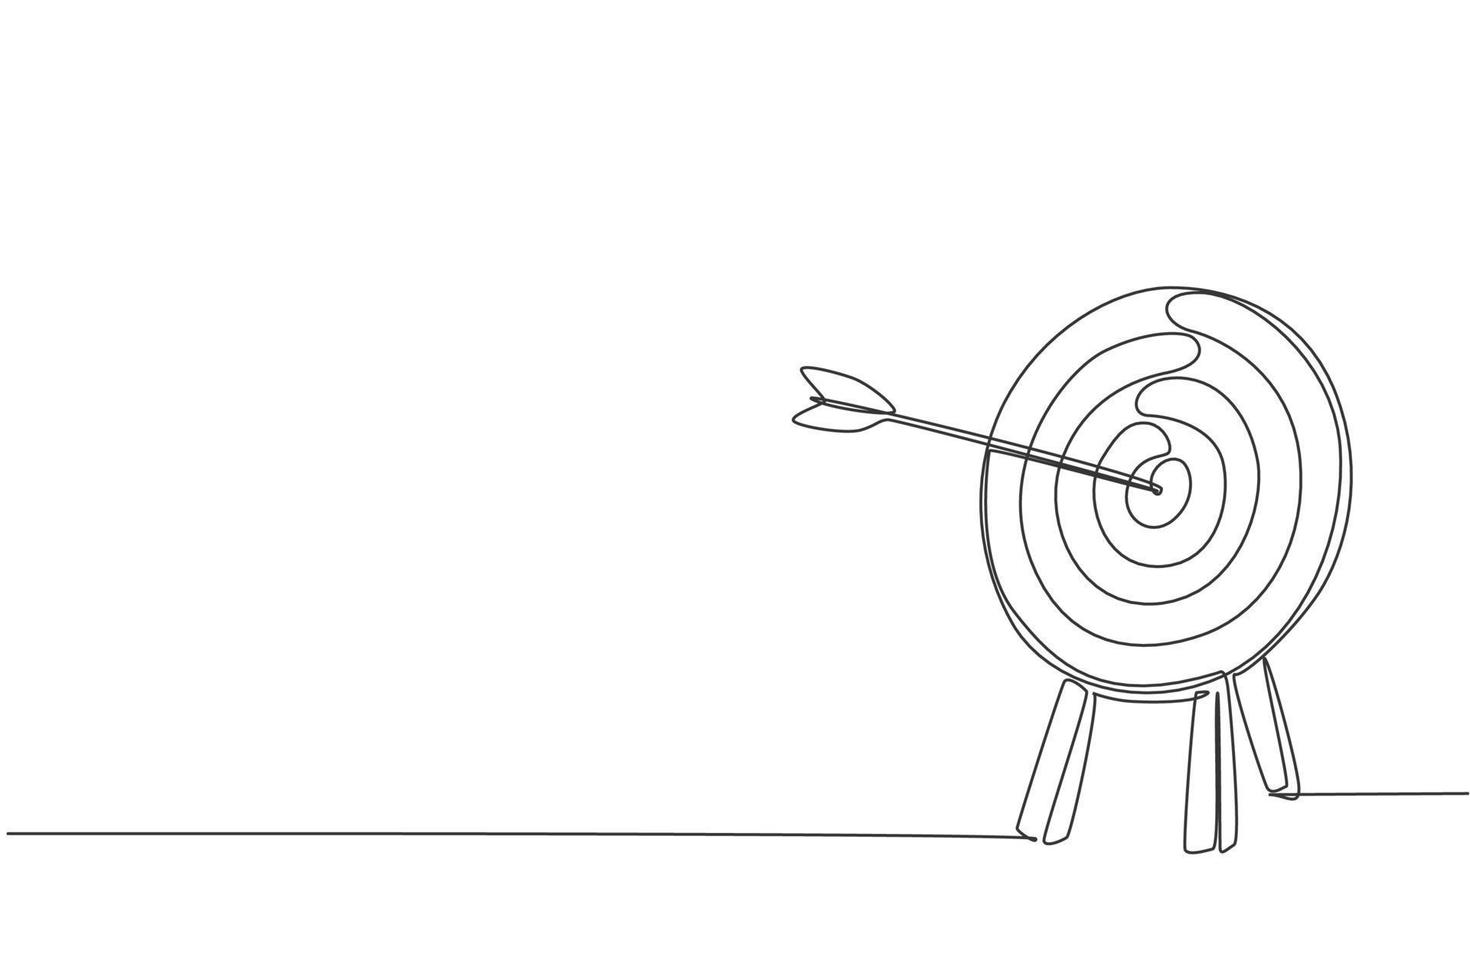 um desenho de linha contínua de flecha foi disparado bullseye para placa de alvo de tiro com arco. conceito de equipamento esportivo de tiro com arco. ilustração em vetor gráfico de desenho de linha única dinâmica